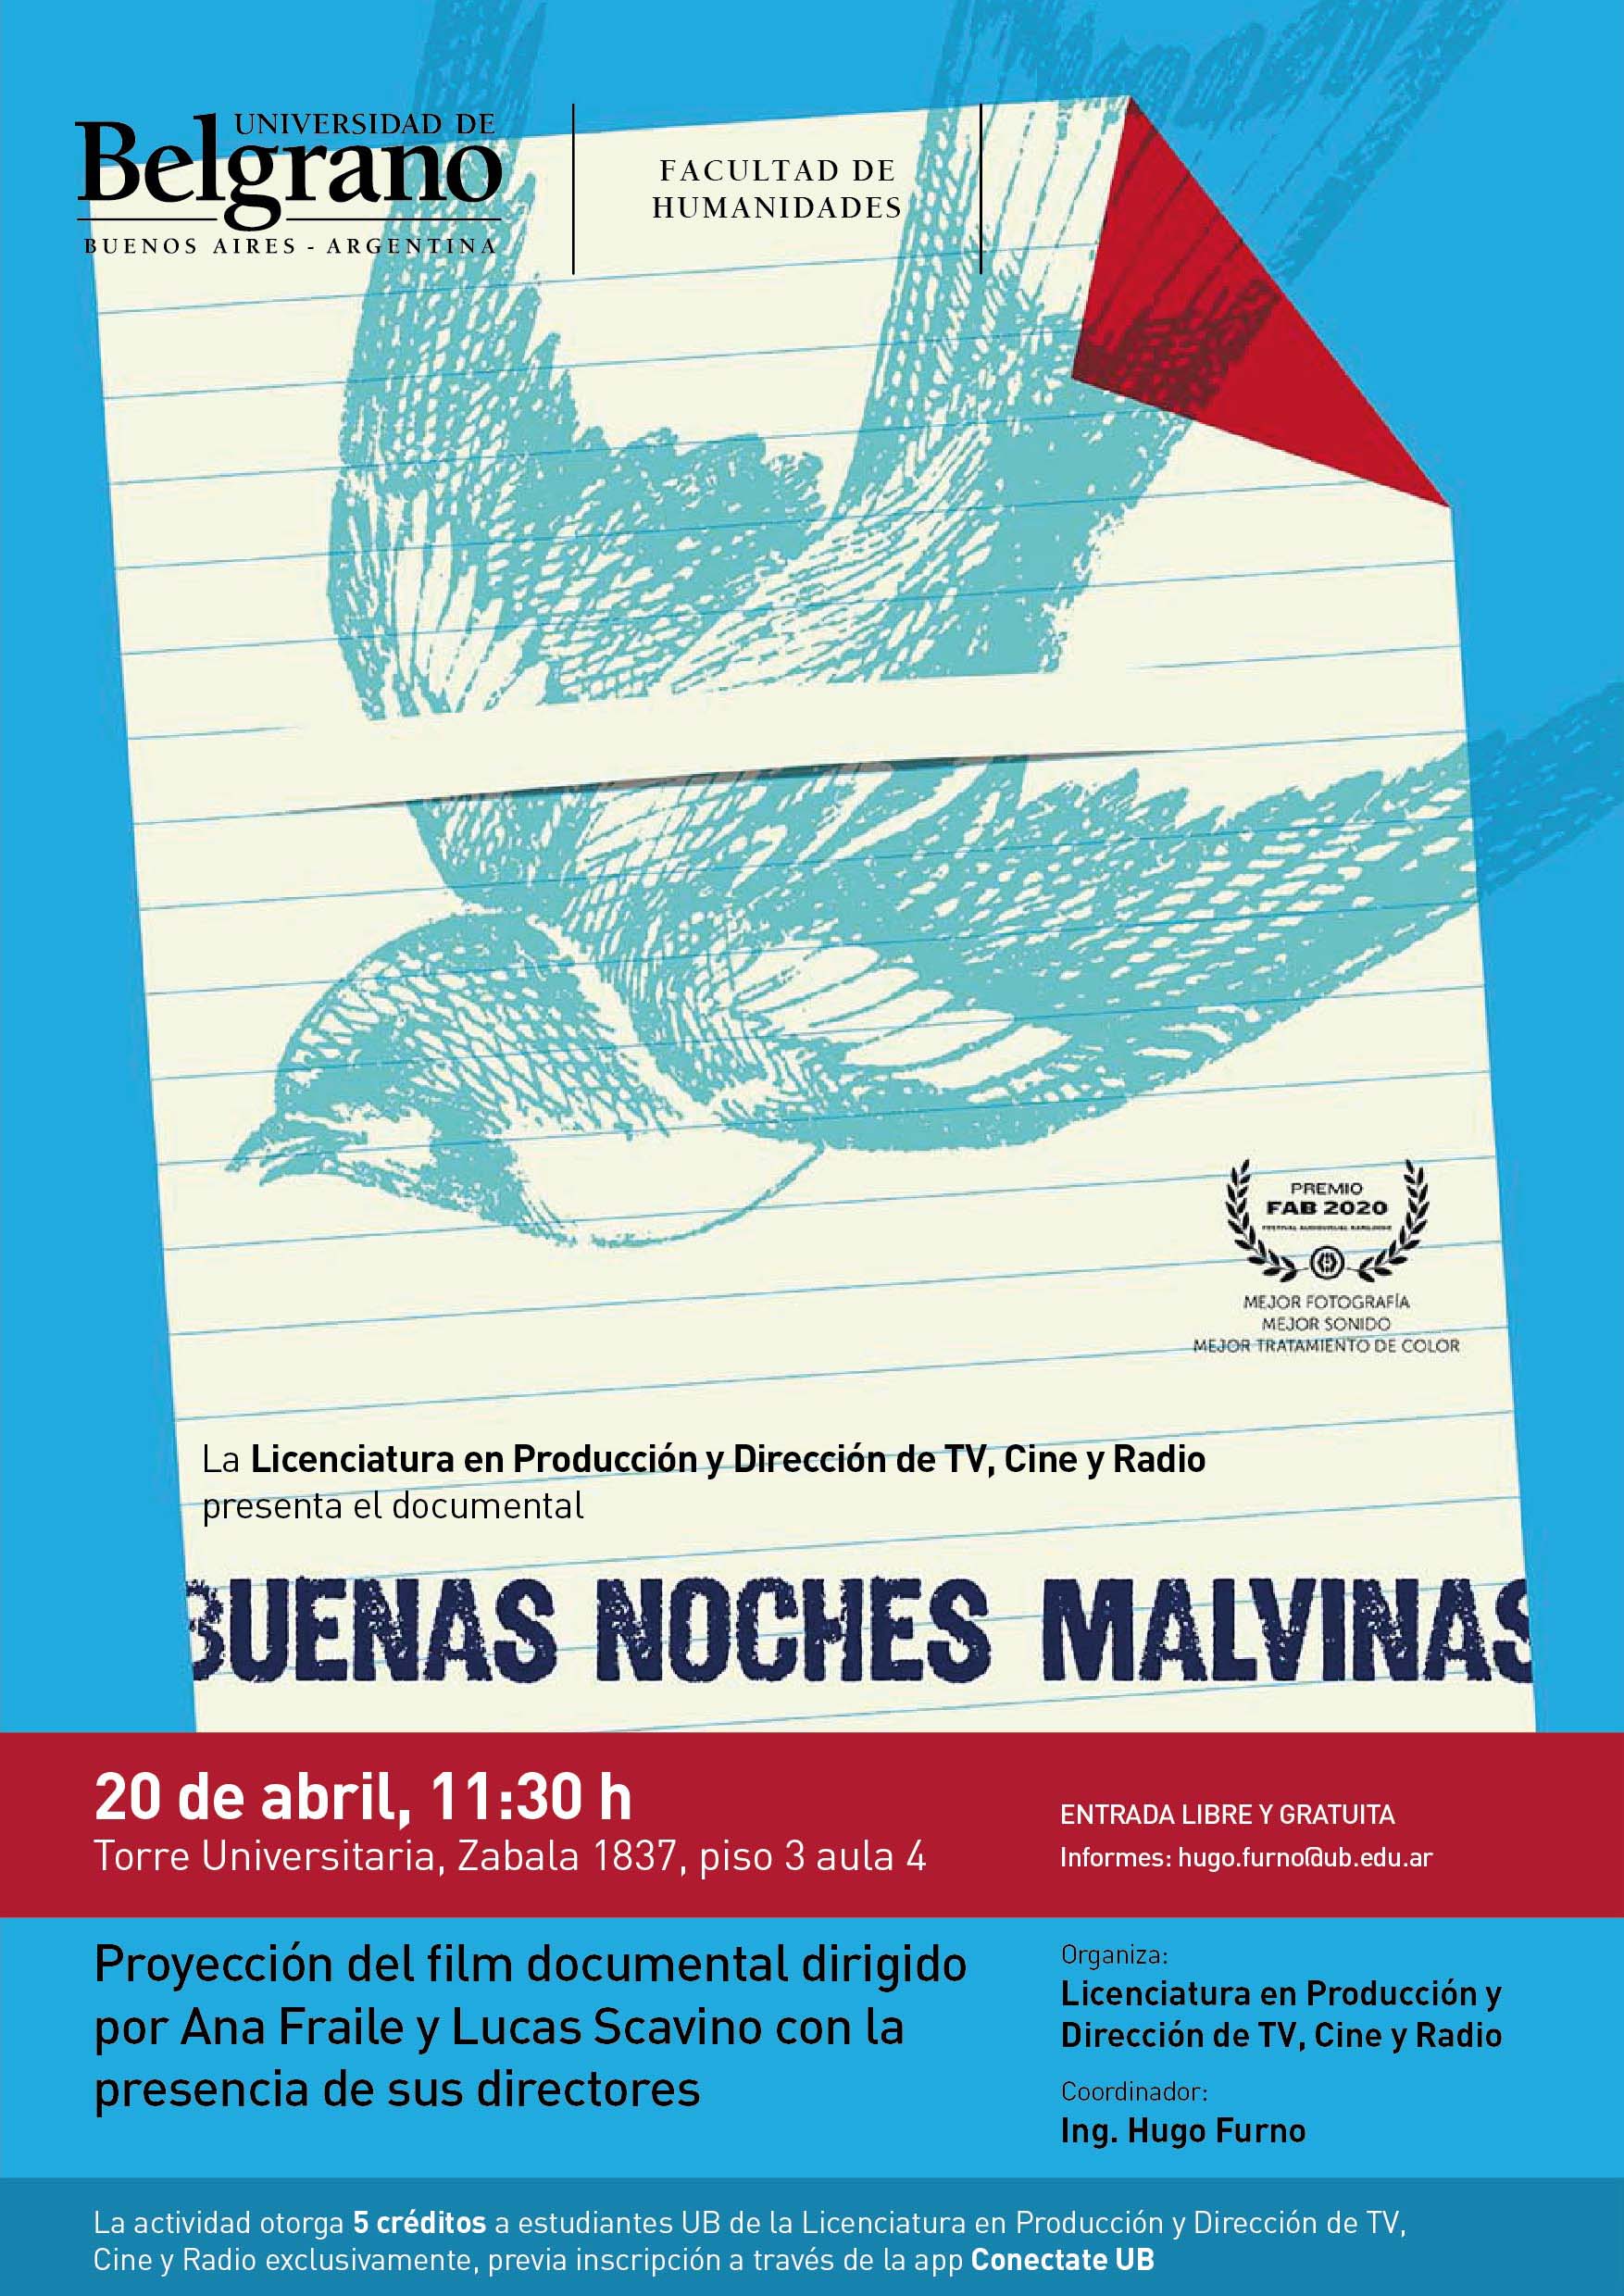 Buenas Noches Malvinas | Universidad de Belgrano